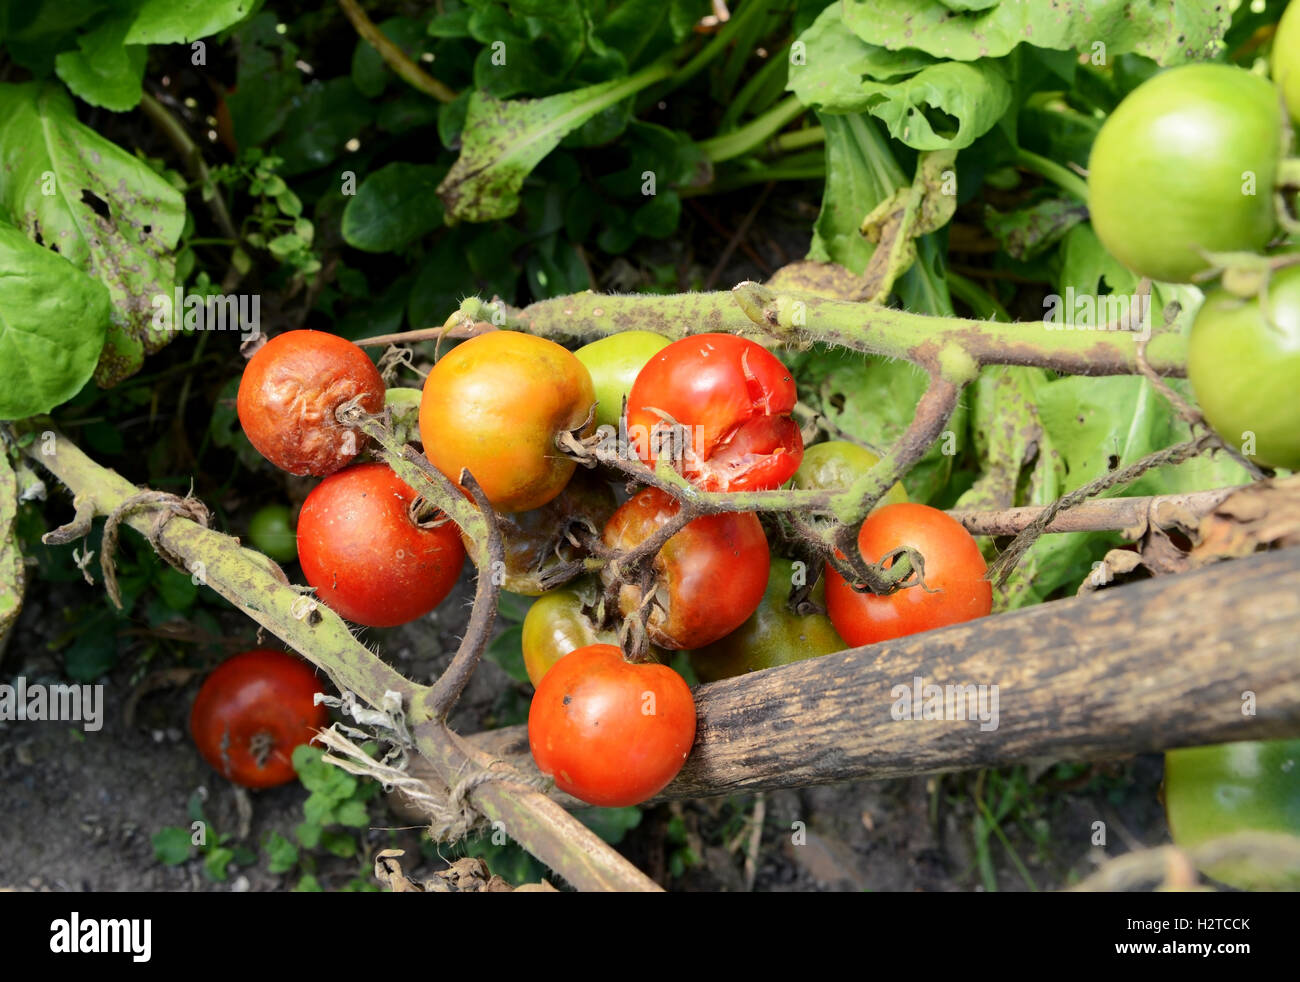 La cercha de split y plaga que aflige a tomates cherry en un huerto. Tallos de plantas muestran manchas marrones de la enfermedad. Foto de stock